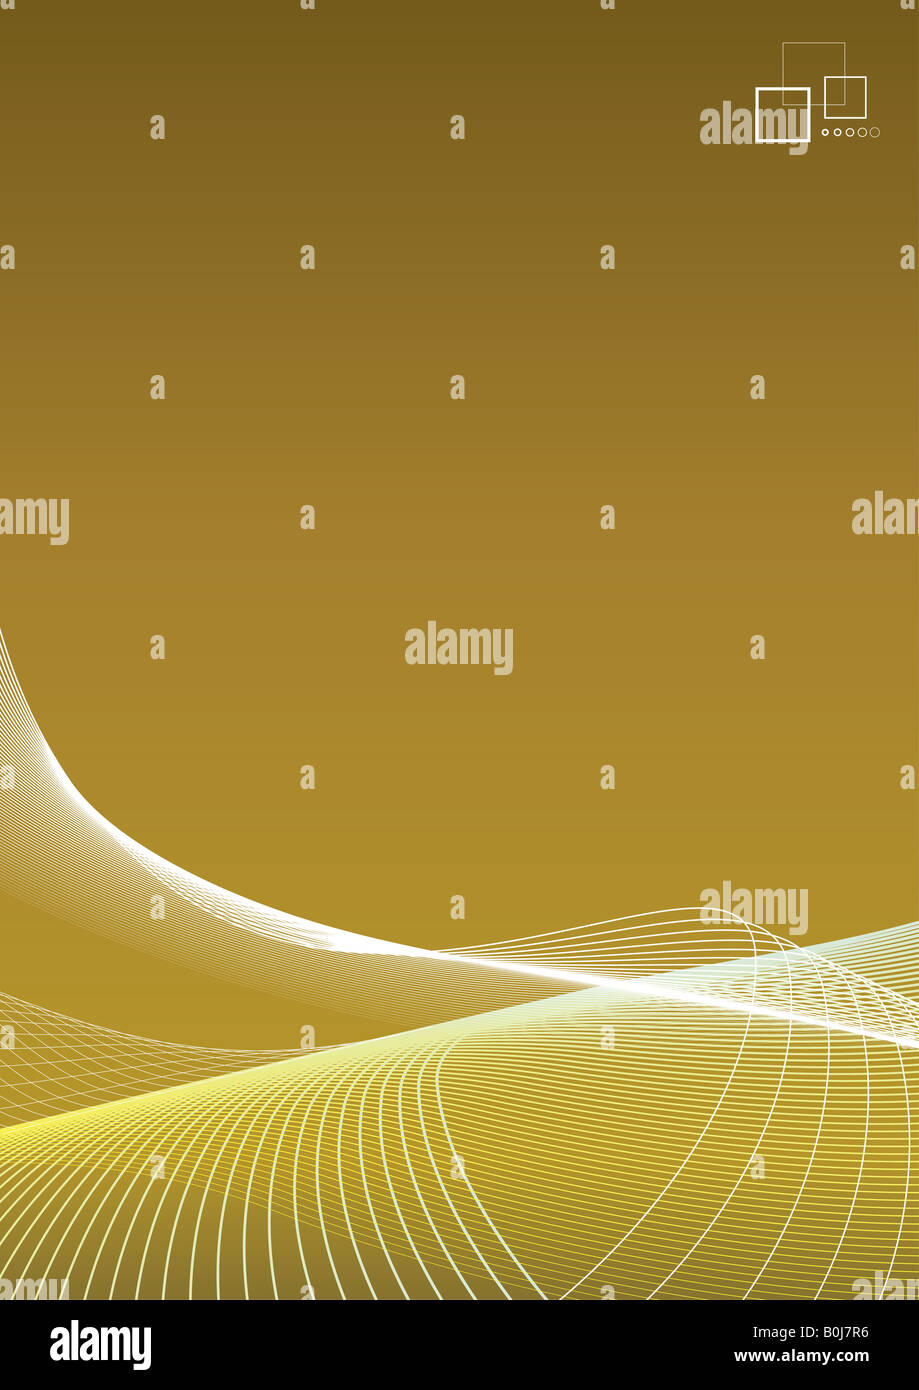 Vector illustration de l'art doublé d'un gradient vierge fond doré avec logo template ou ad message dans le coin Nettoyer Banque D'Images